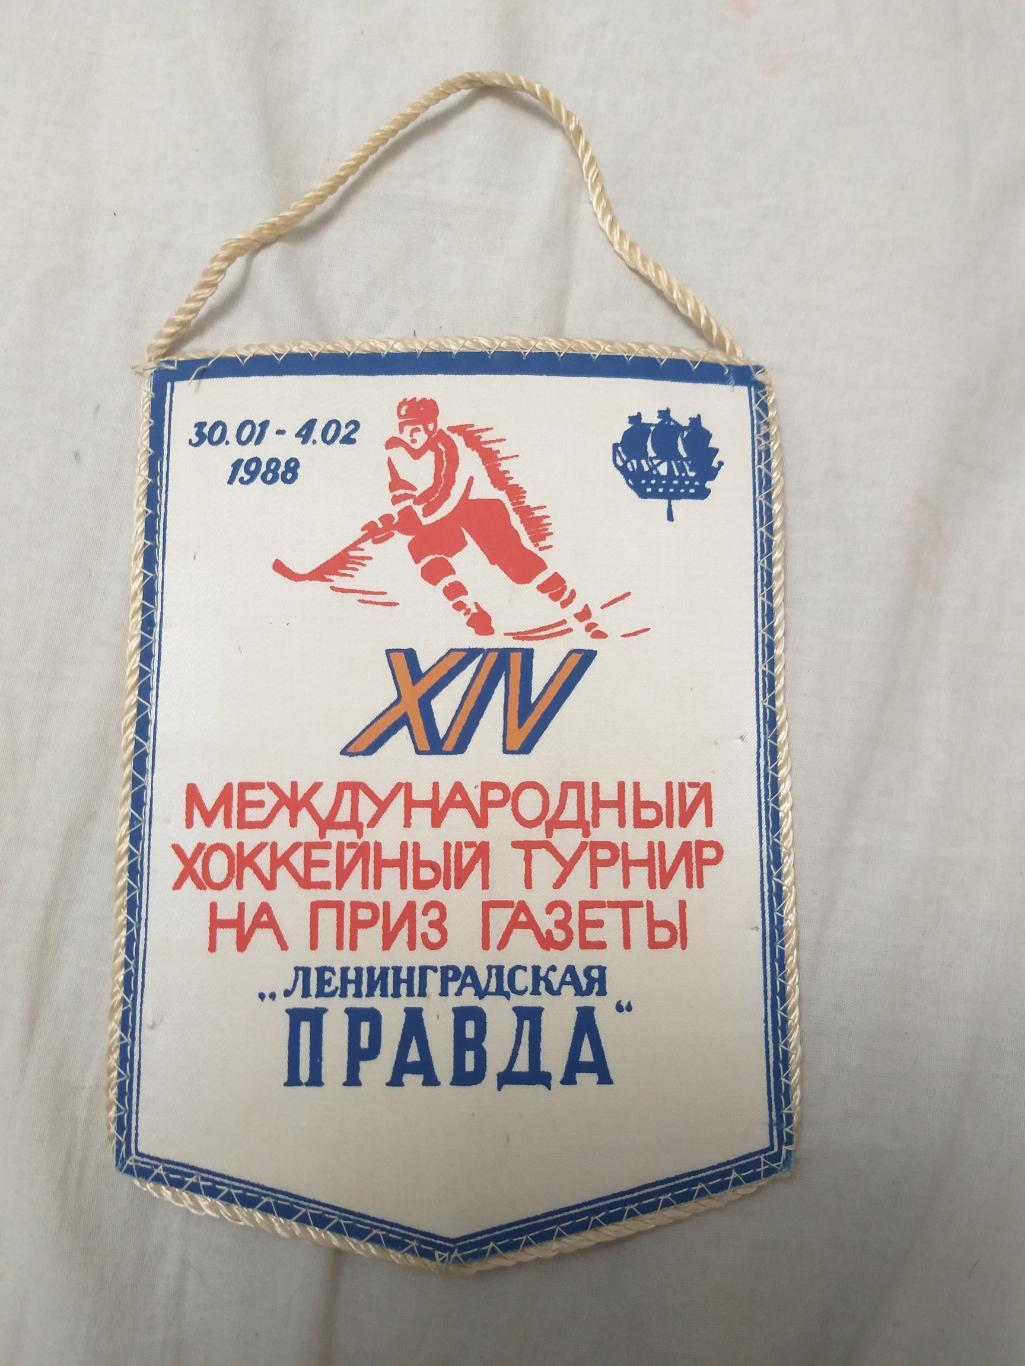 Вымпел Турнир Ленинградская Правда 30.01-4.02.1988